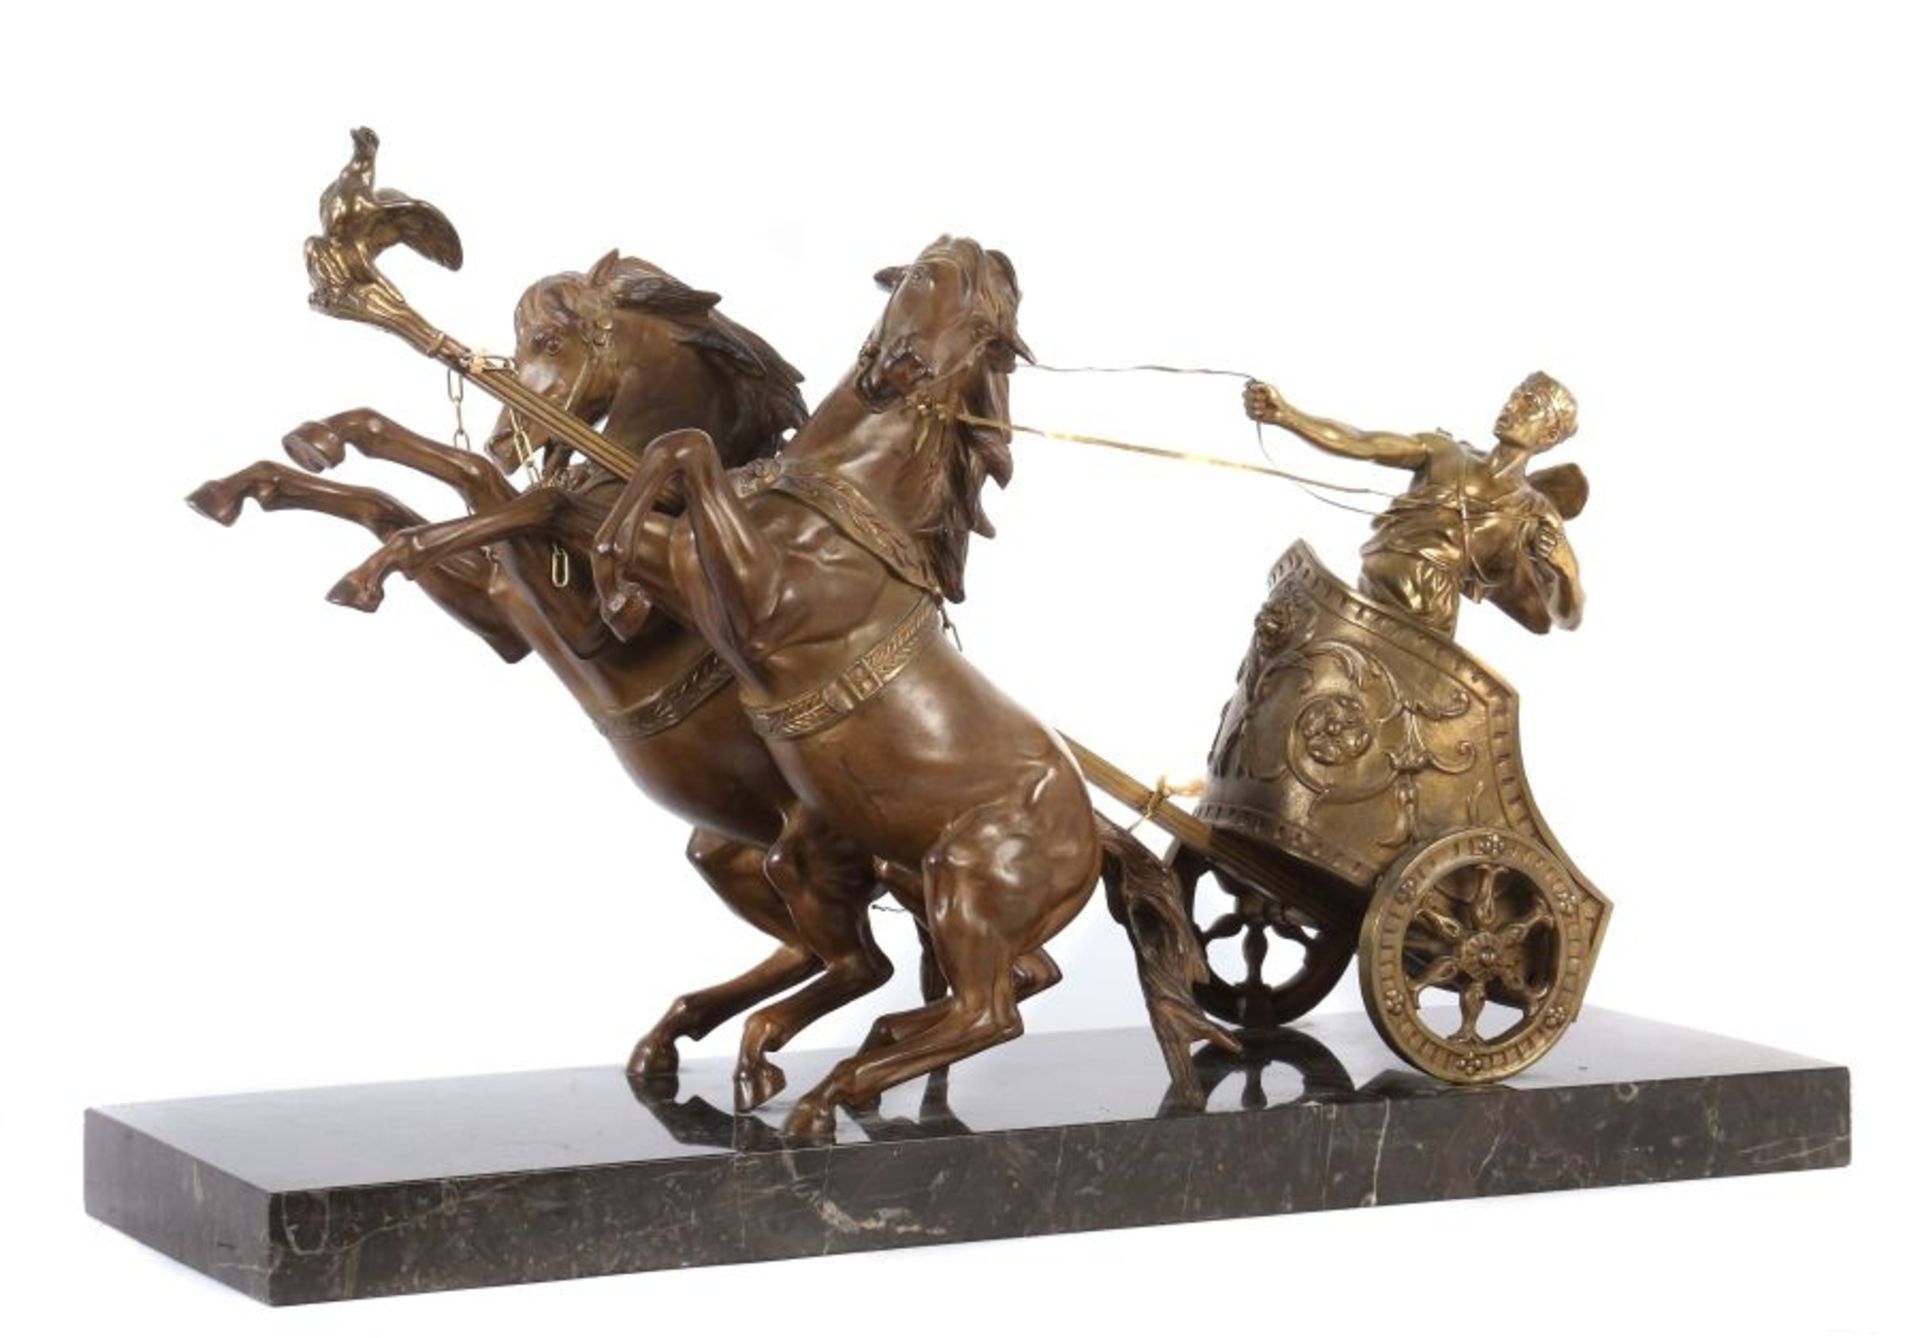 Domenech Et Pfeffer "Römischer Streitwagen", Metallguss patiniert, vollplastische Figurengruppe des